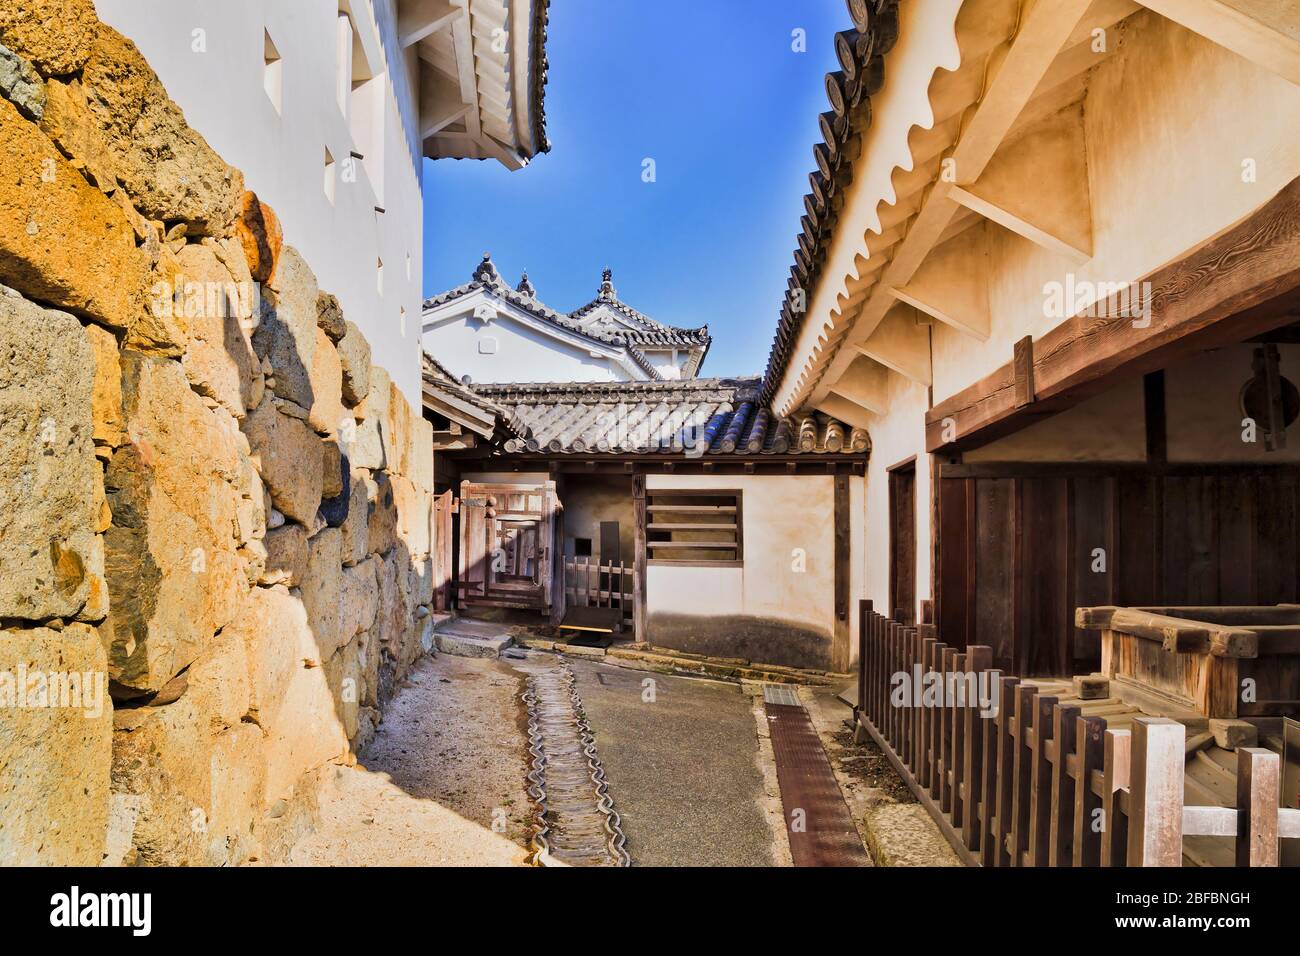 Vieux château blanc au Japon près d'Osaka - Himeji. Cour intérieure et passerelle entre les vieux bâtiments historiques et les murs en pierre. Banque D'Images